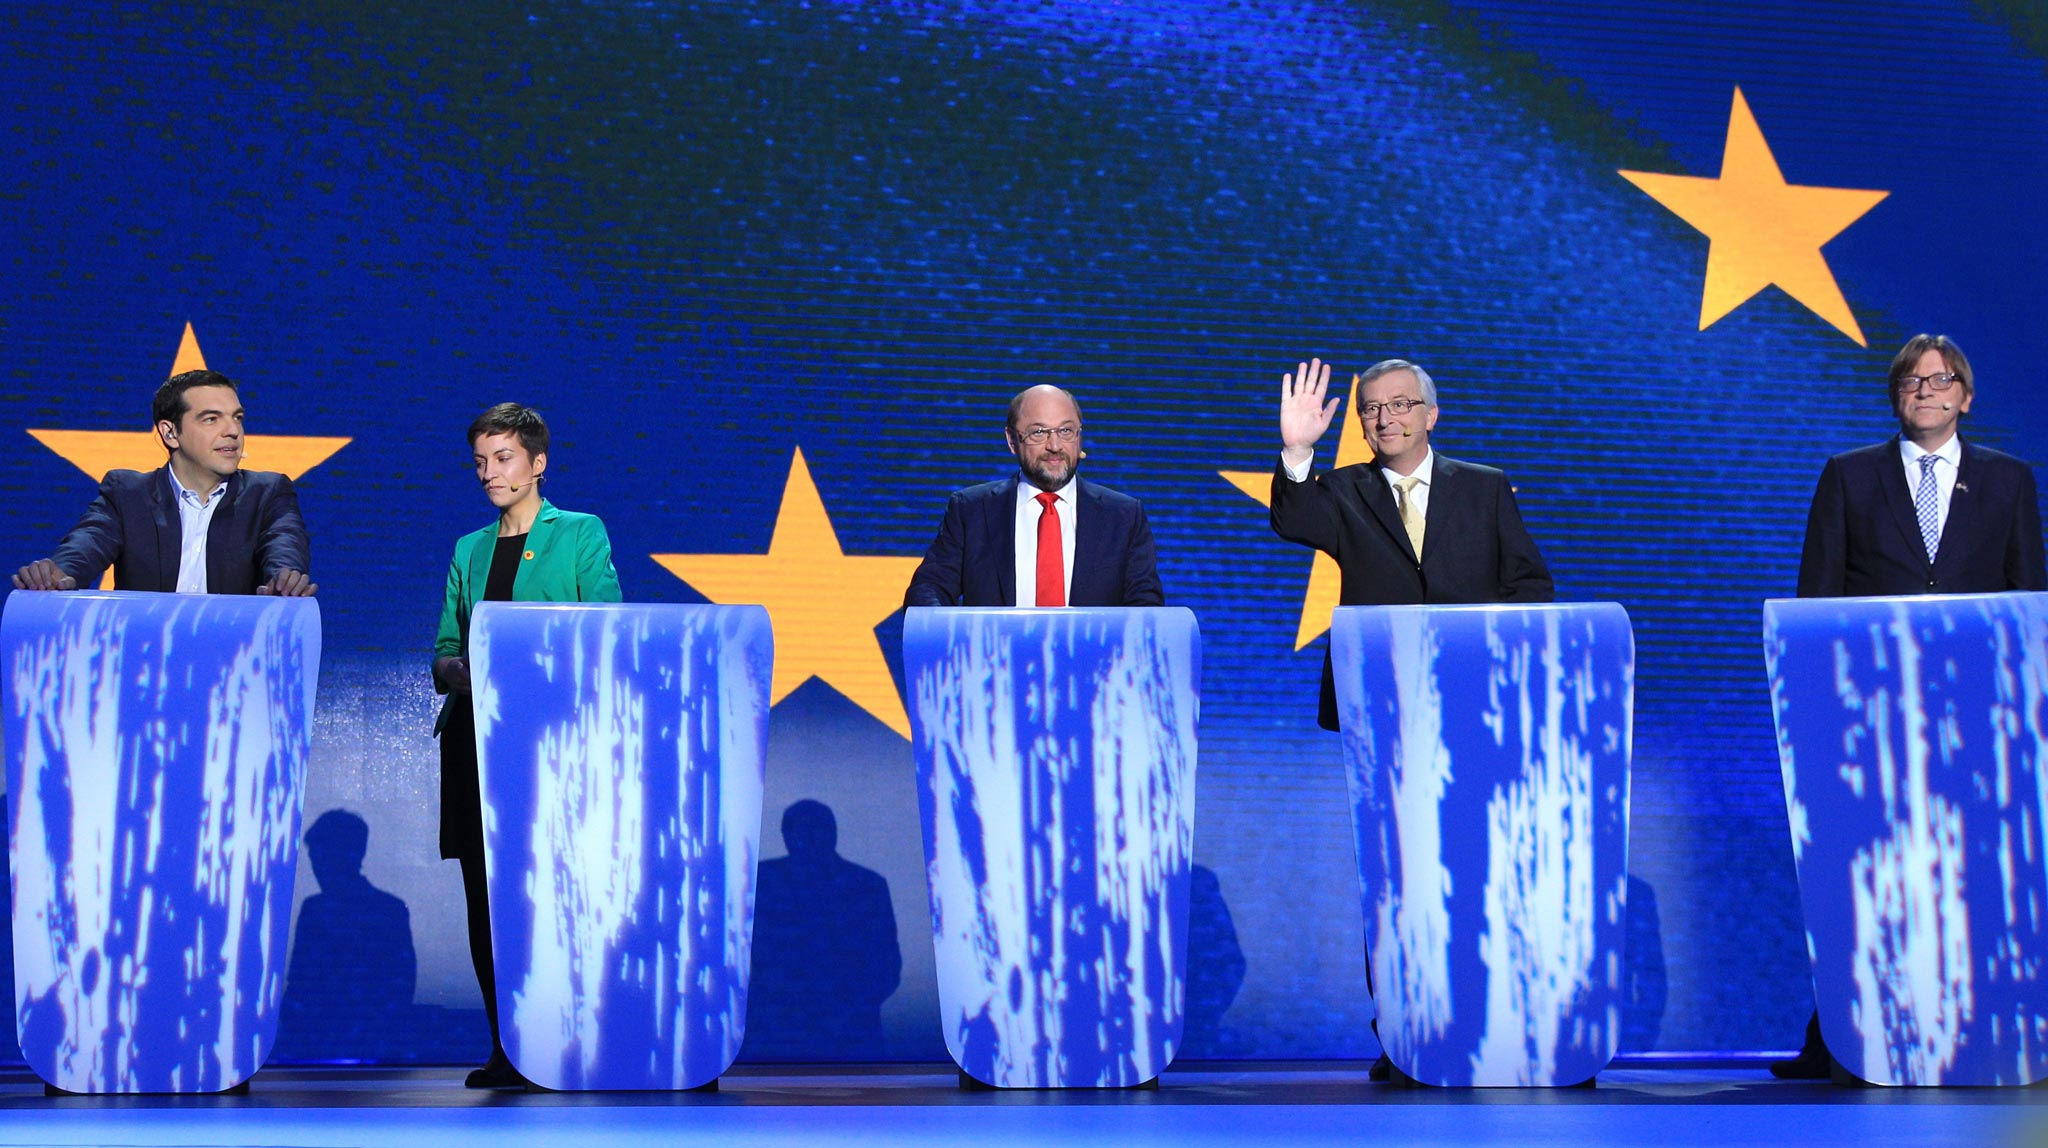 From left, Alexis Tsipras, Ska Keller, Martin Schulz,
Jean-Claude Juncker, and Guy Verhofstadt